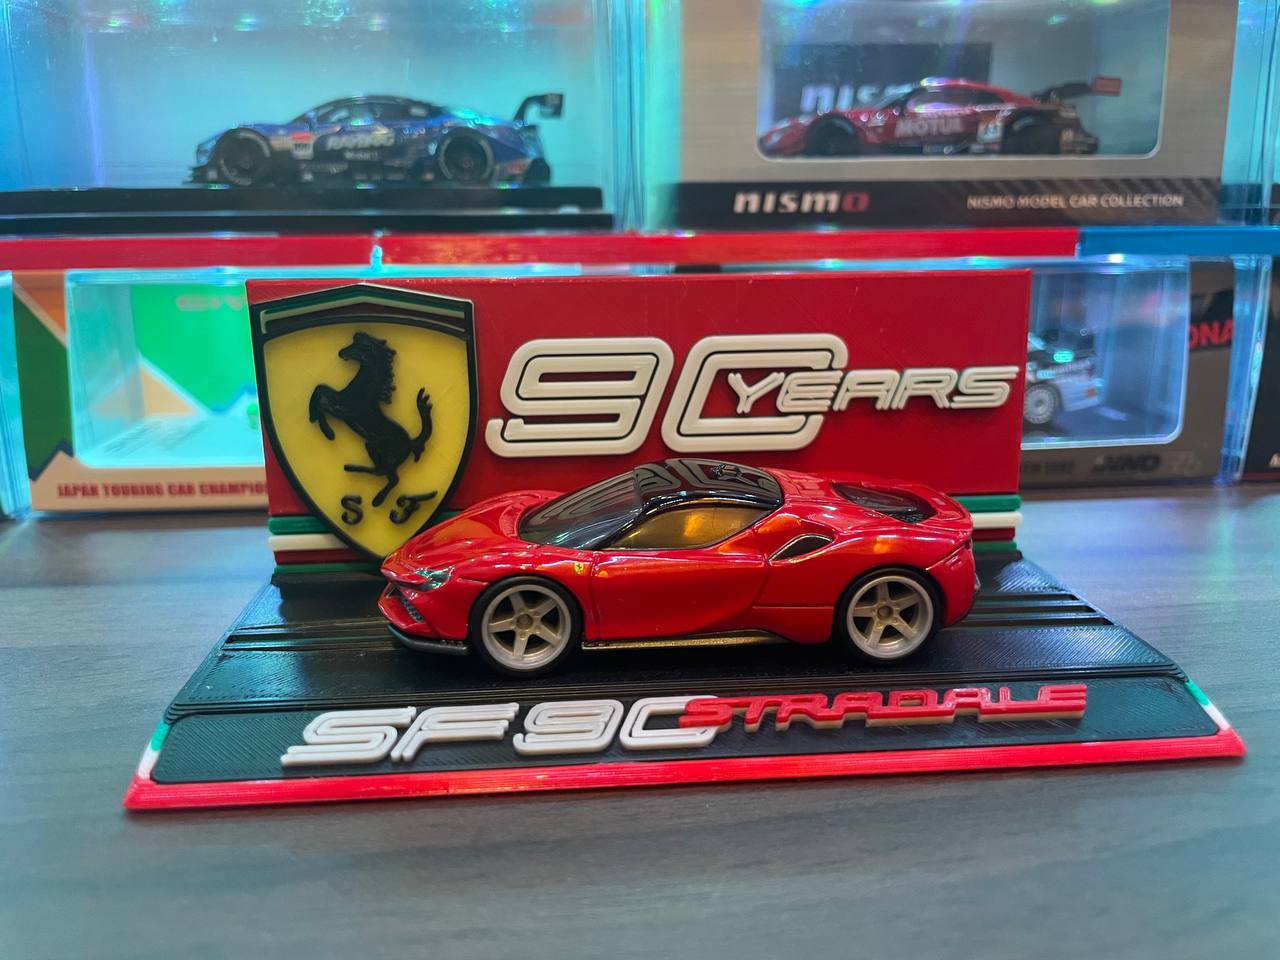 Tomica Ferrari SF90 Stradale Display (Ferrari 90 Years Theme) by ...